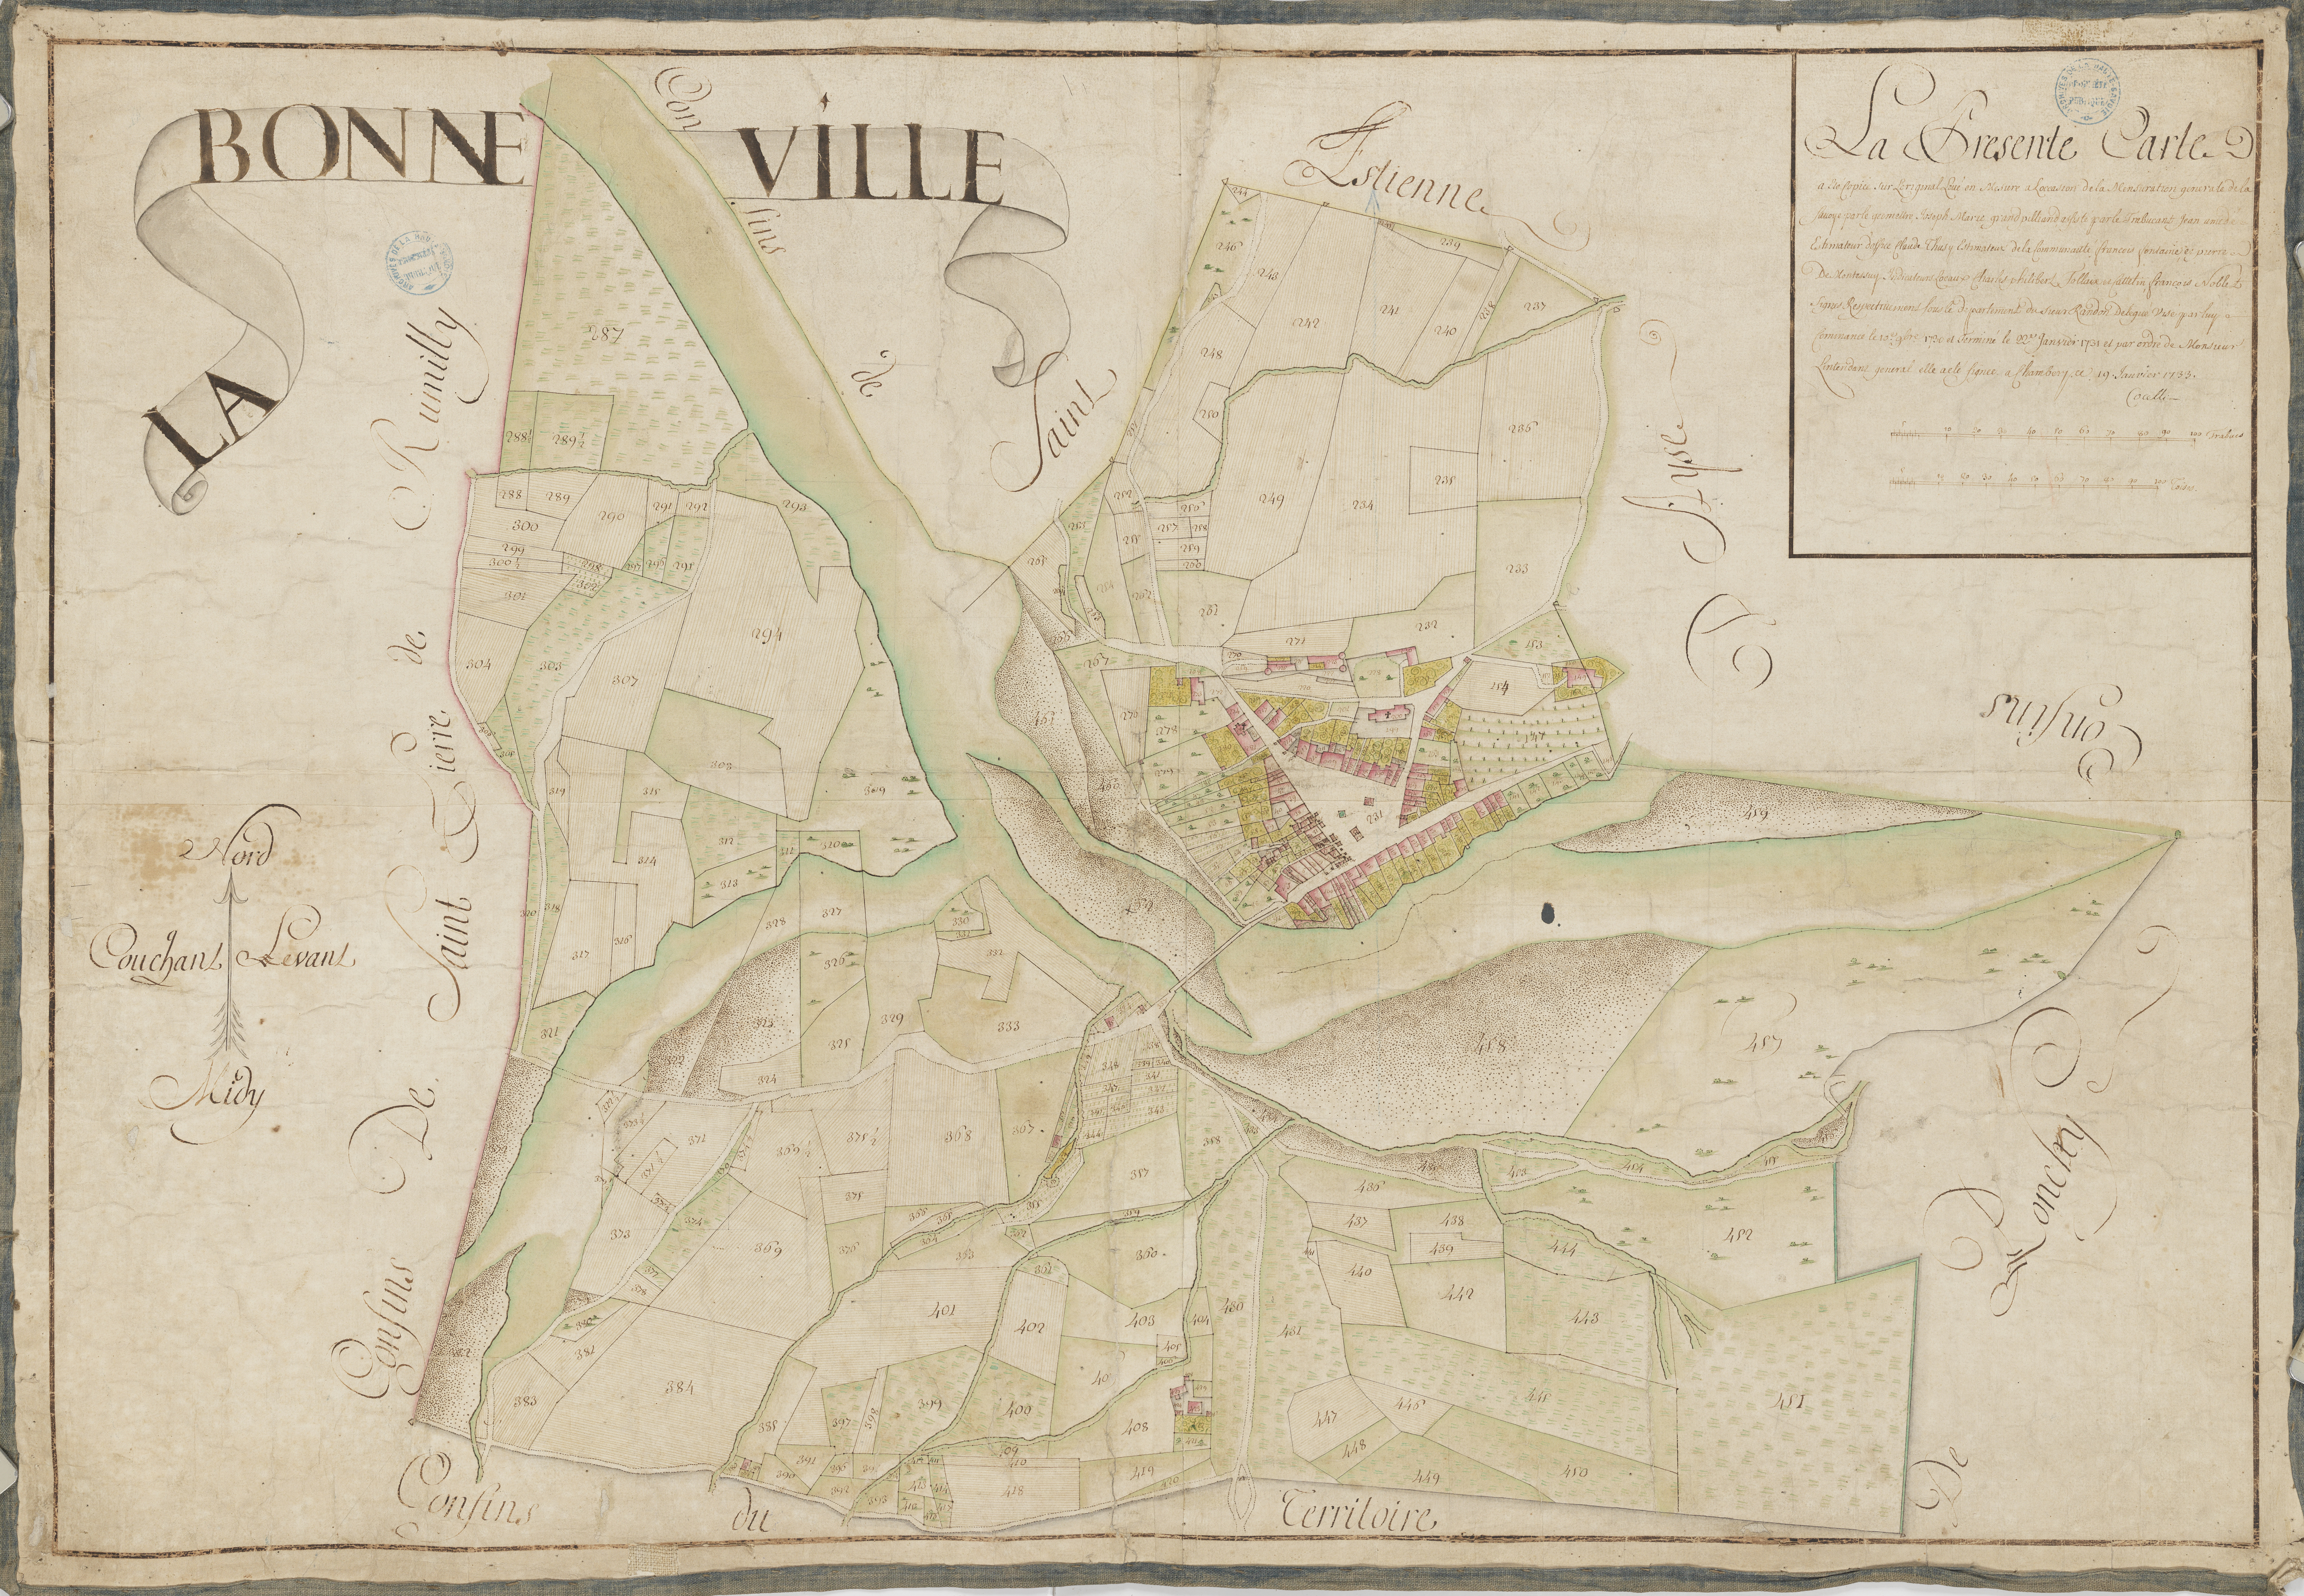 Figure 1 - Bonneville, copie de la mappe (1728-1738)